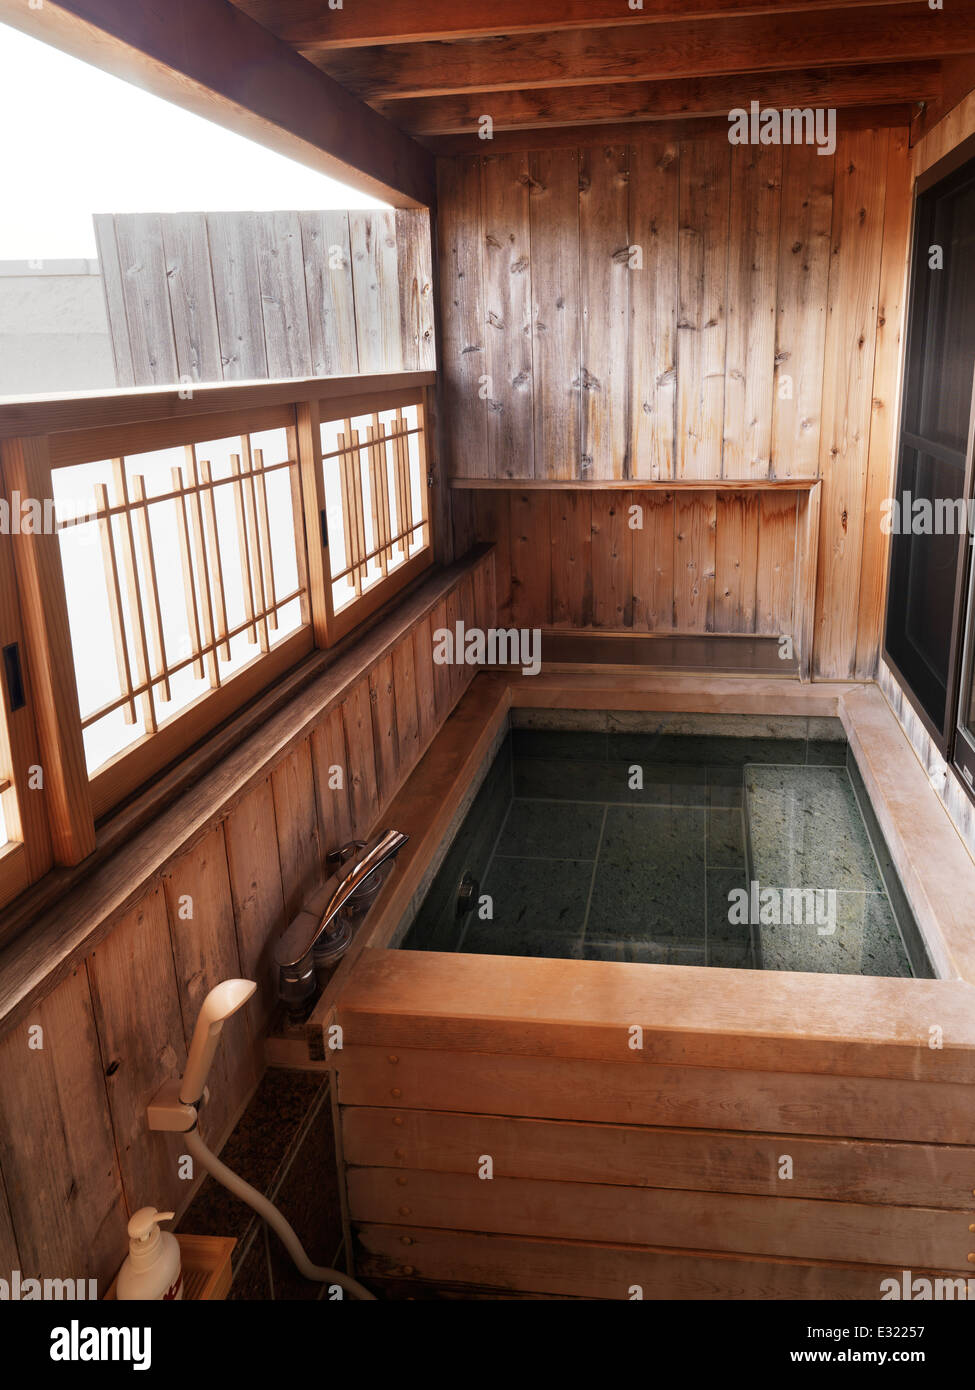 Onsen, private hot spring bath tab at a ryokan traditional Japanese hotel. Fujikawaguchiko, Yamanashi, Japan. Stock Photo